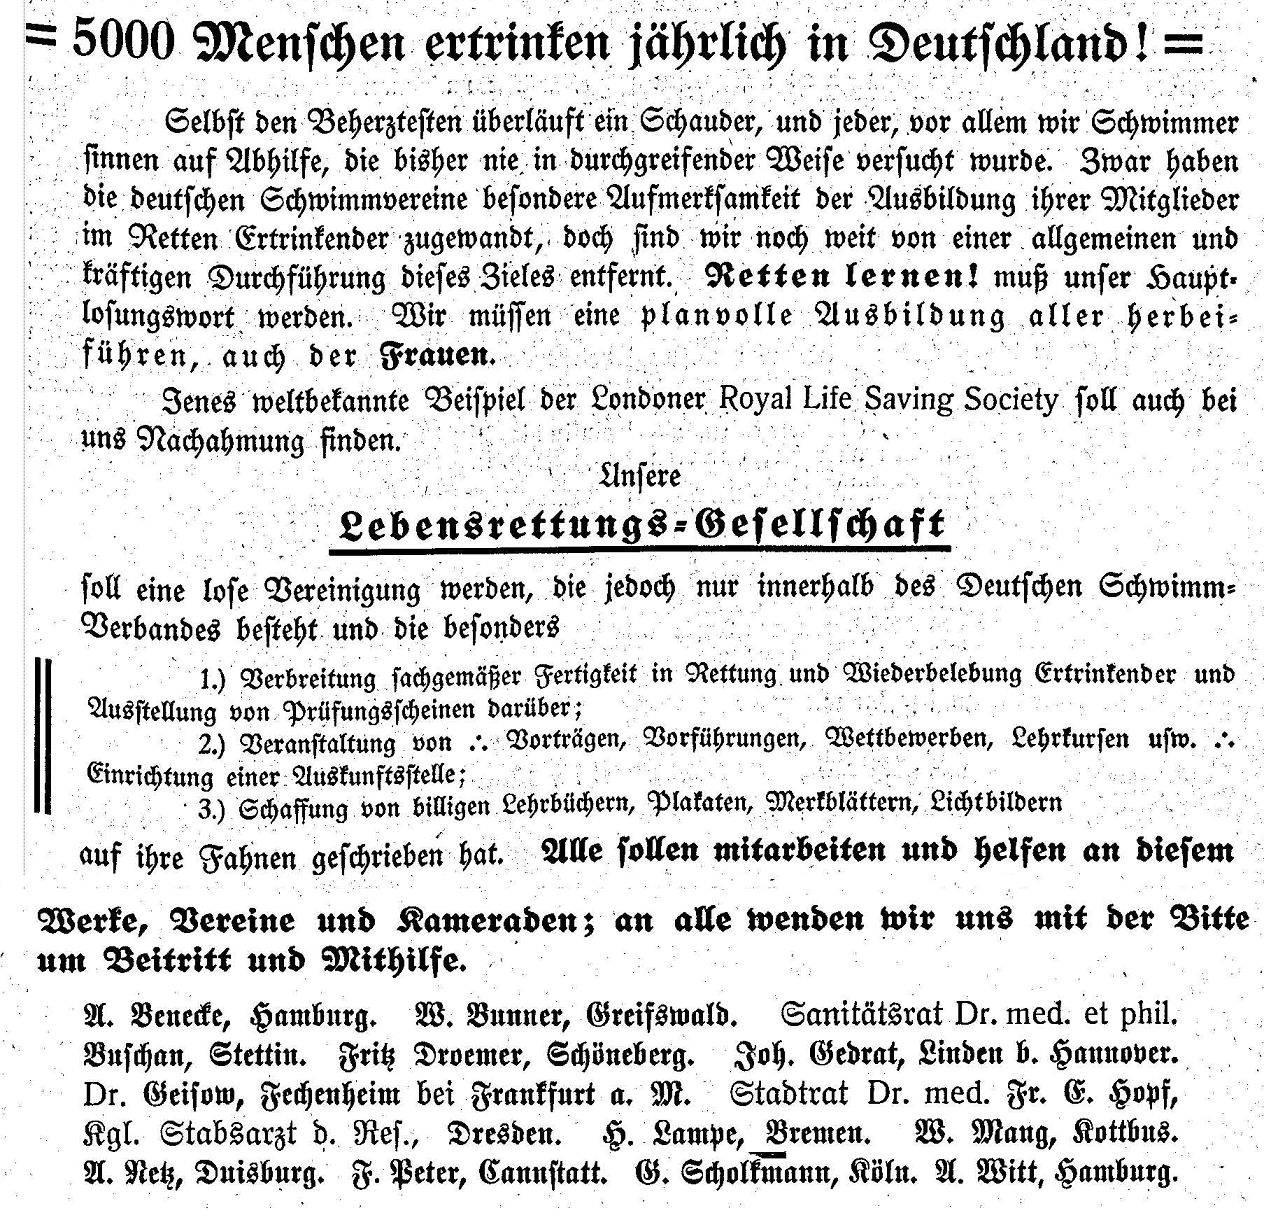 Der Gründungsaufruf aus dem "Deutschen Schwimmer" vom 5. Juni 1913.